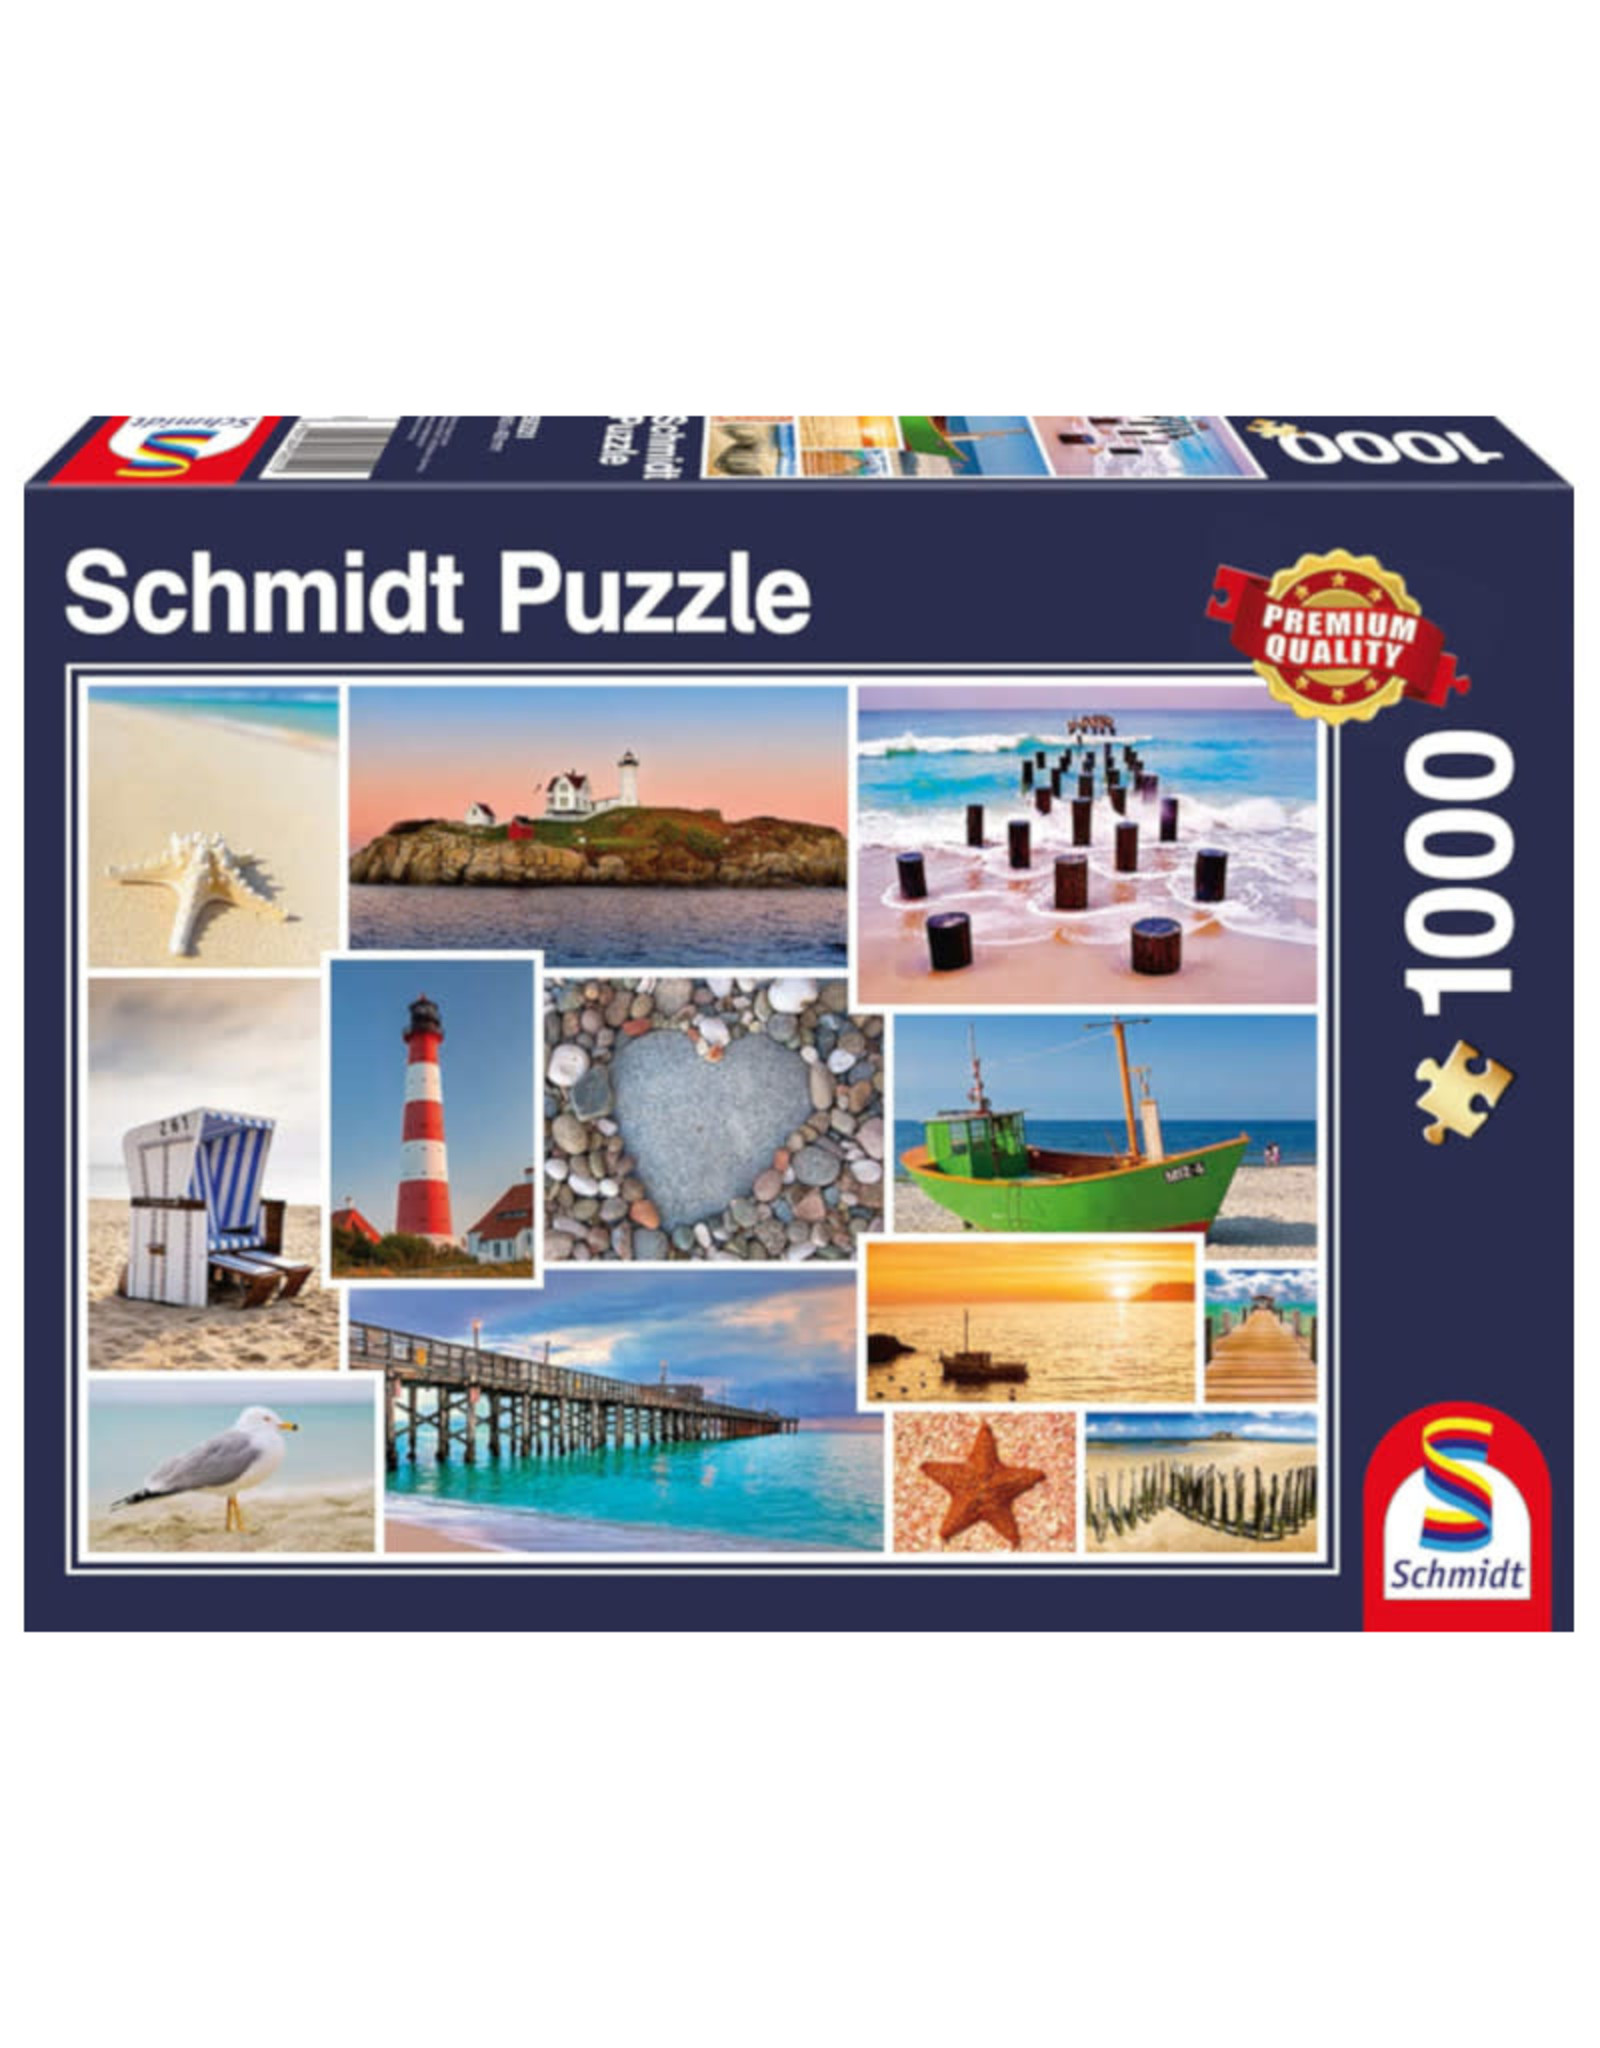 Schmidt By the Sea Puzzle 1000 PCS